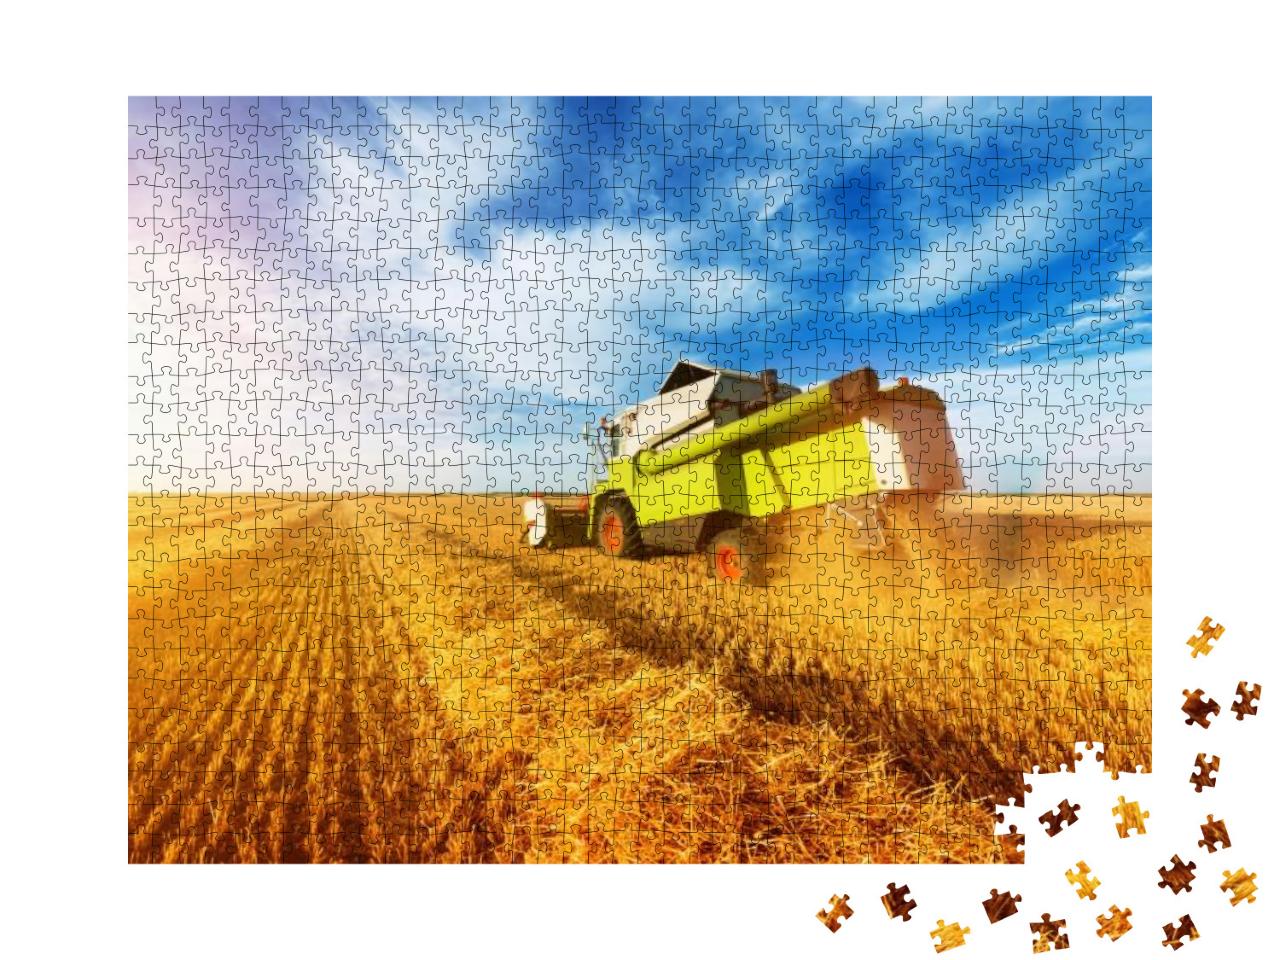 Puzzle 1000 Teile „Mähdrescher-Ernte im goldenen Weizenfeld“